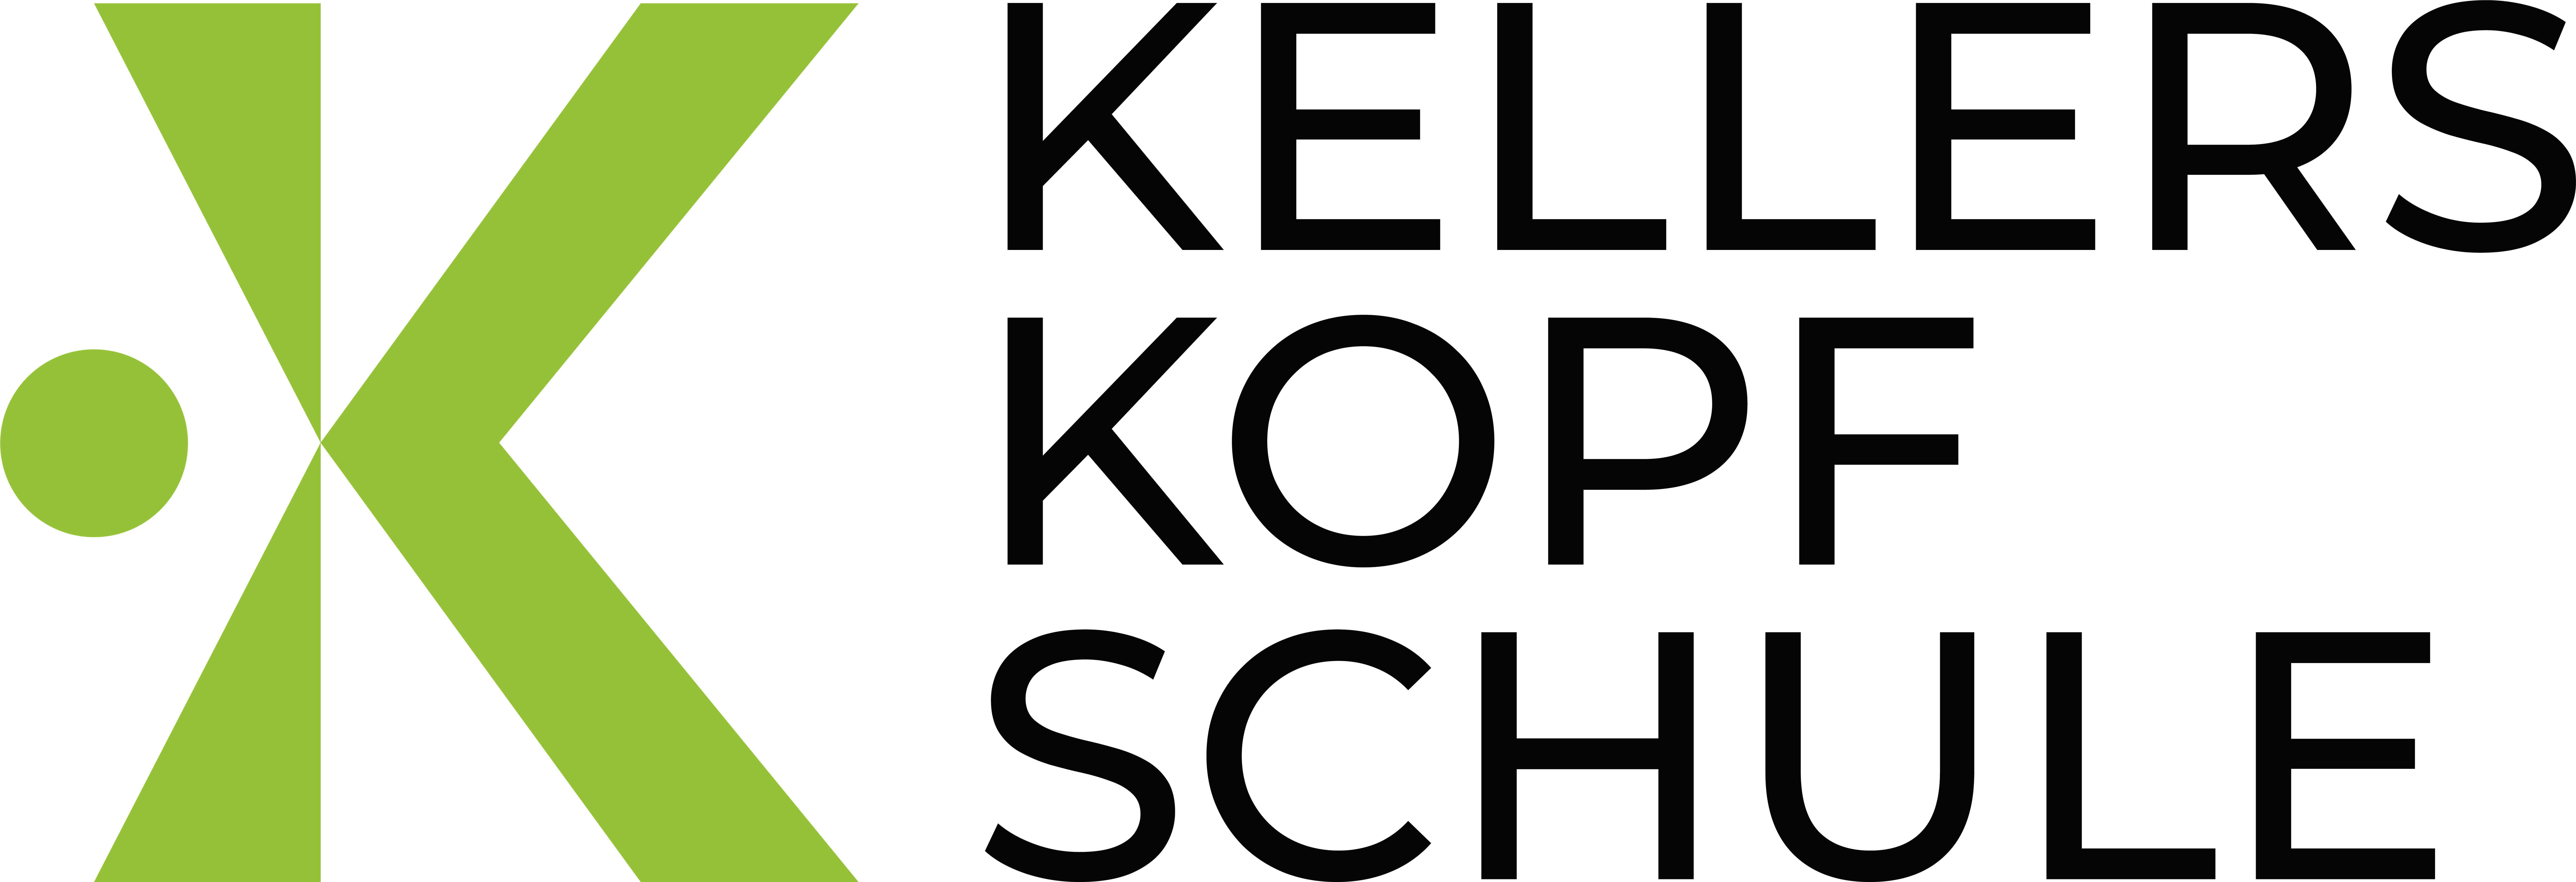 Kellerskopfschule